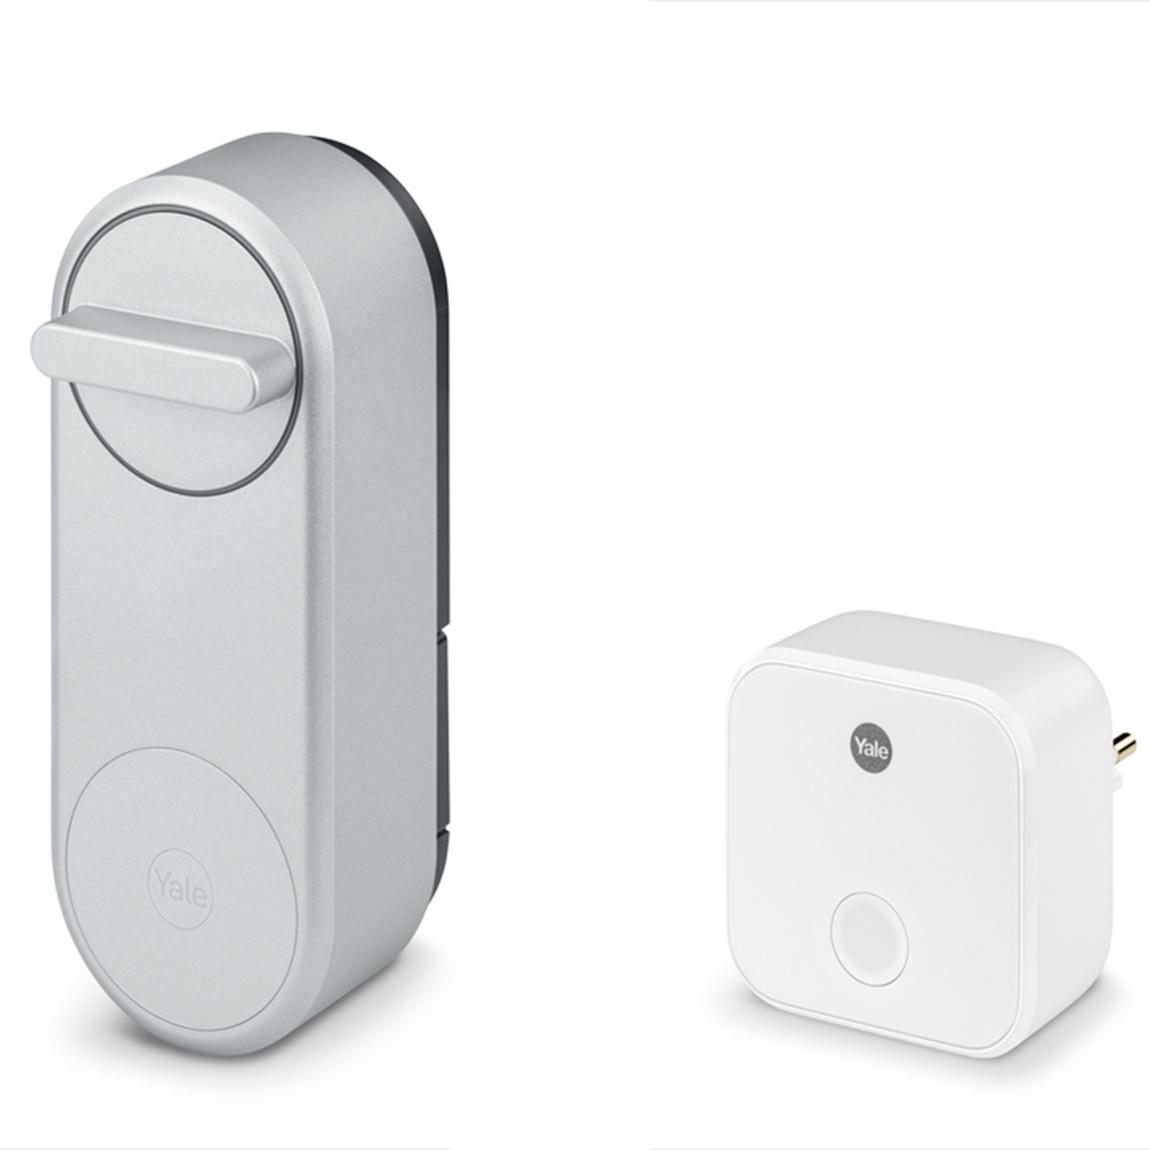 Bosch Smart Home - Starter Set Zutrittskontrolle_Yale Lock